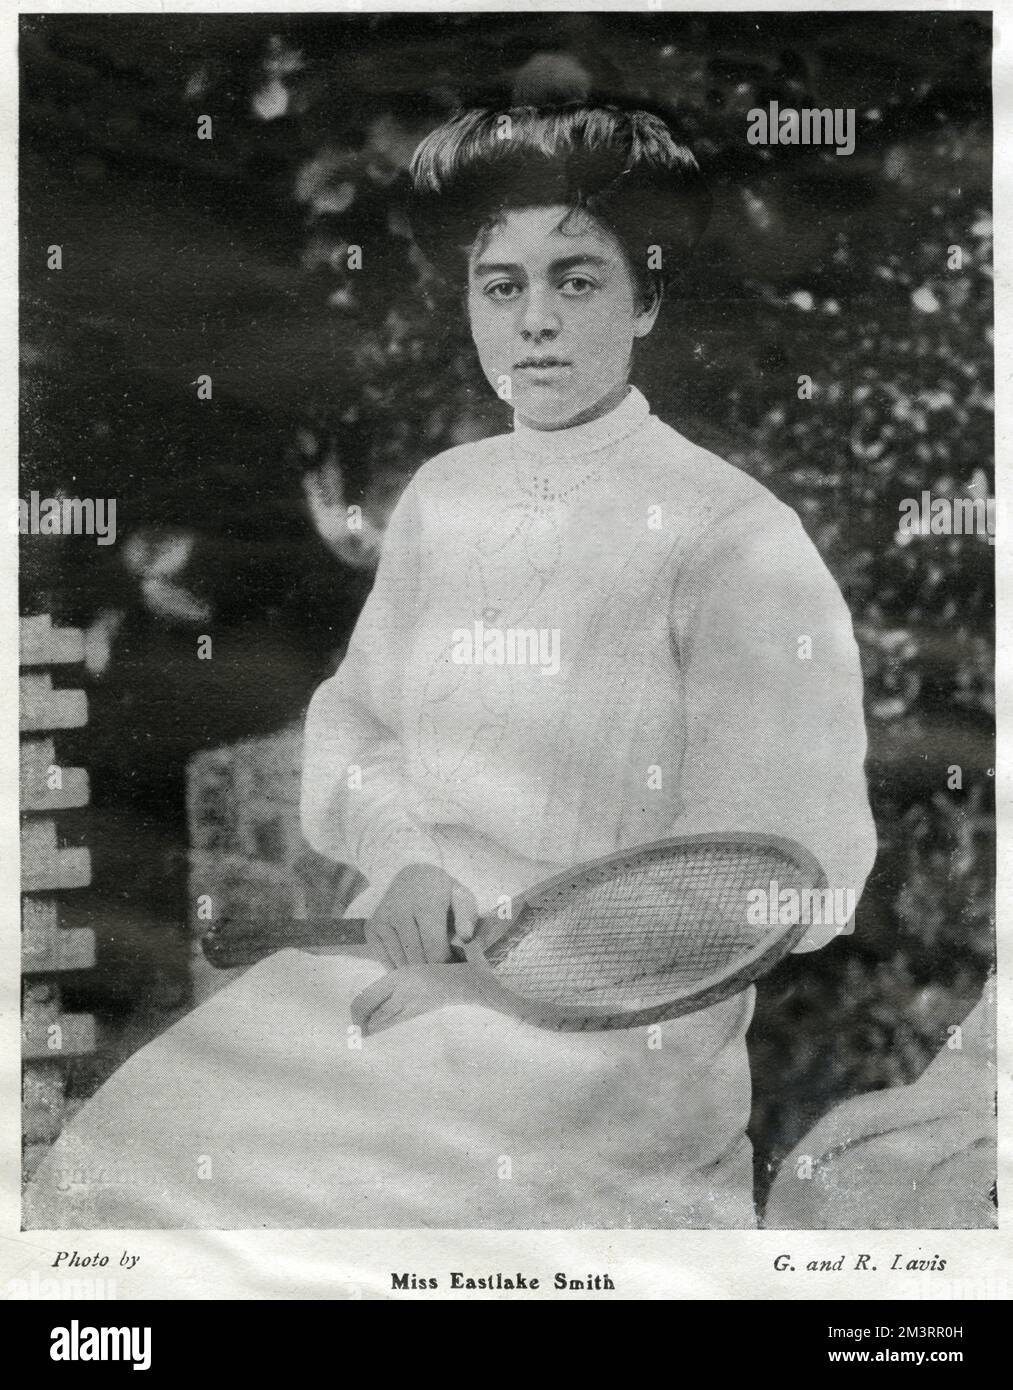 Gwendoline Eastlake-Smith (1883 - 1941), tenista británico, ganó una medalla de oro olímpica en los Juegos Olímpicos de Londres 1908. Fecha: 1905 Foto de stock